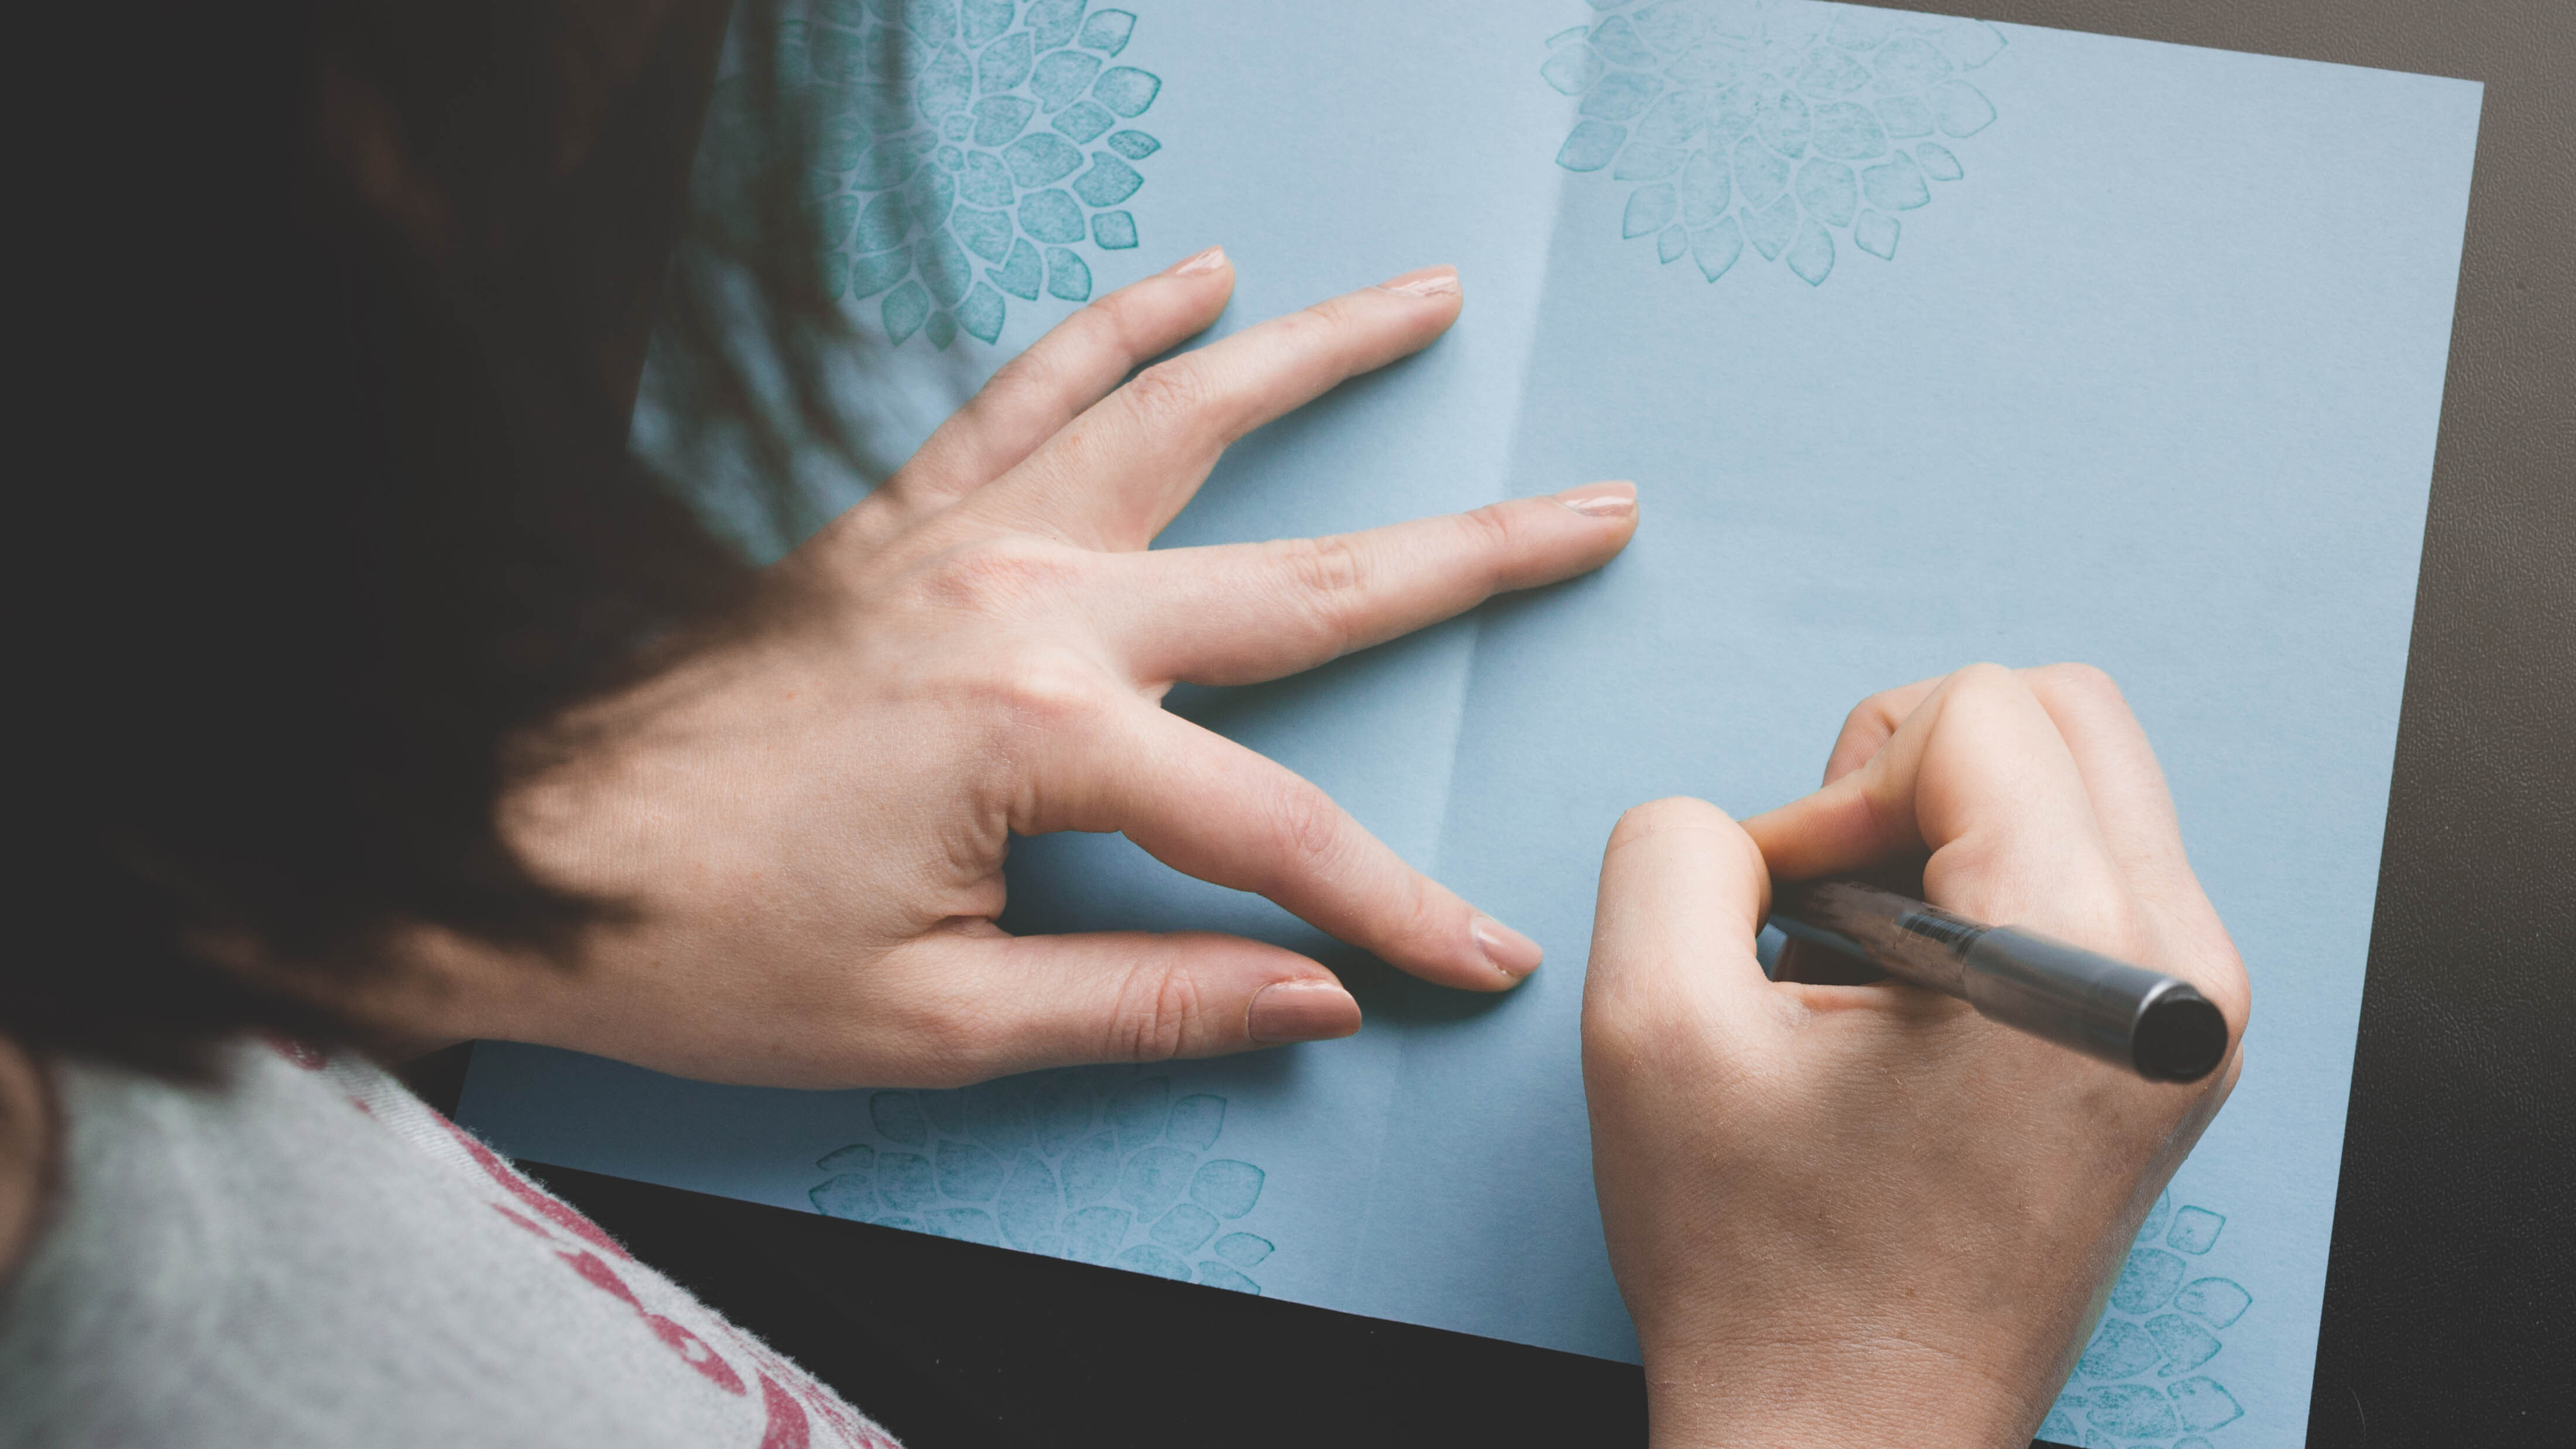 امرأة ذات شعر داكن تكتب داخل بطاقة زرقاء مصنوعة يدويًا